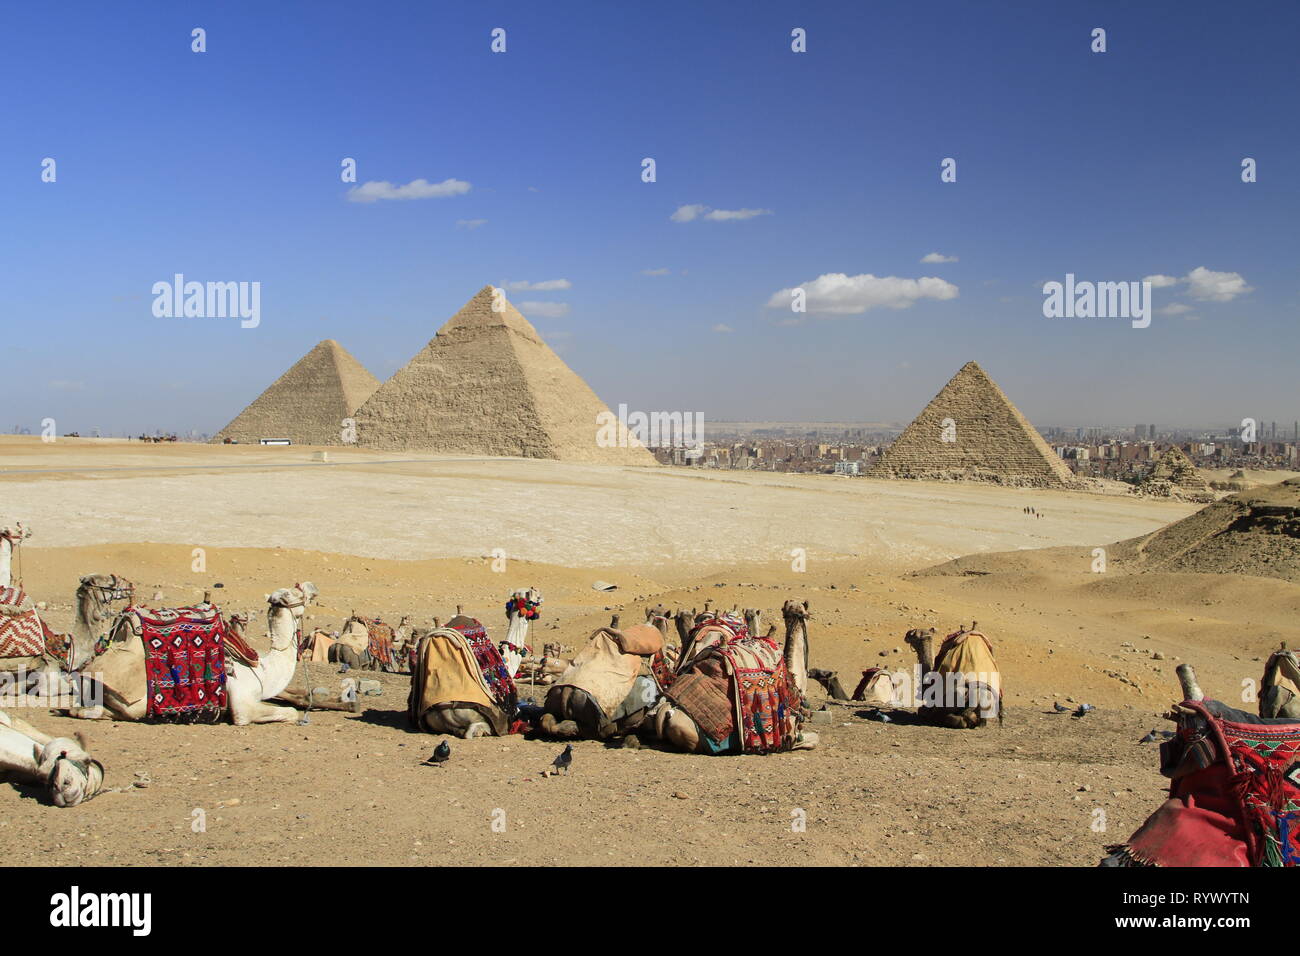 Les chameaux bâtés lors d'une vue surplombant les pyramides de l'Égypte, Giza, Egypte Banque D'Images